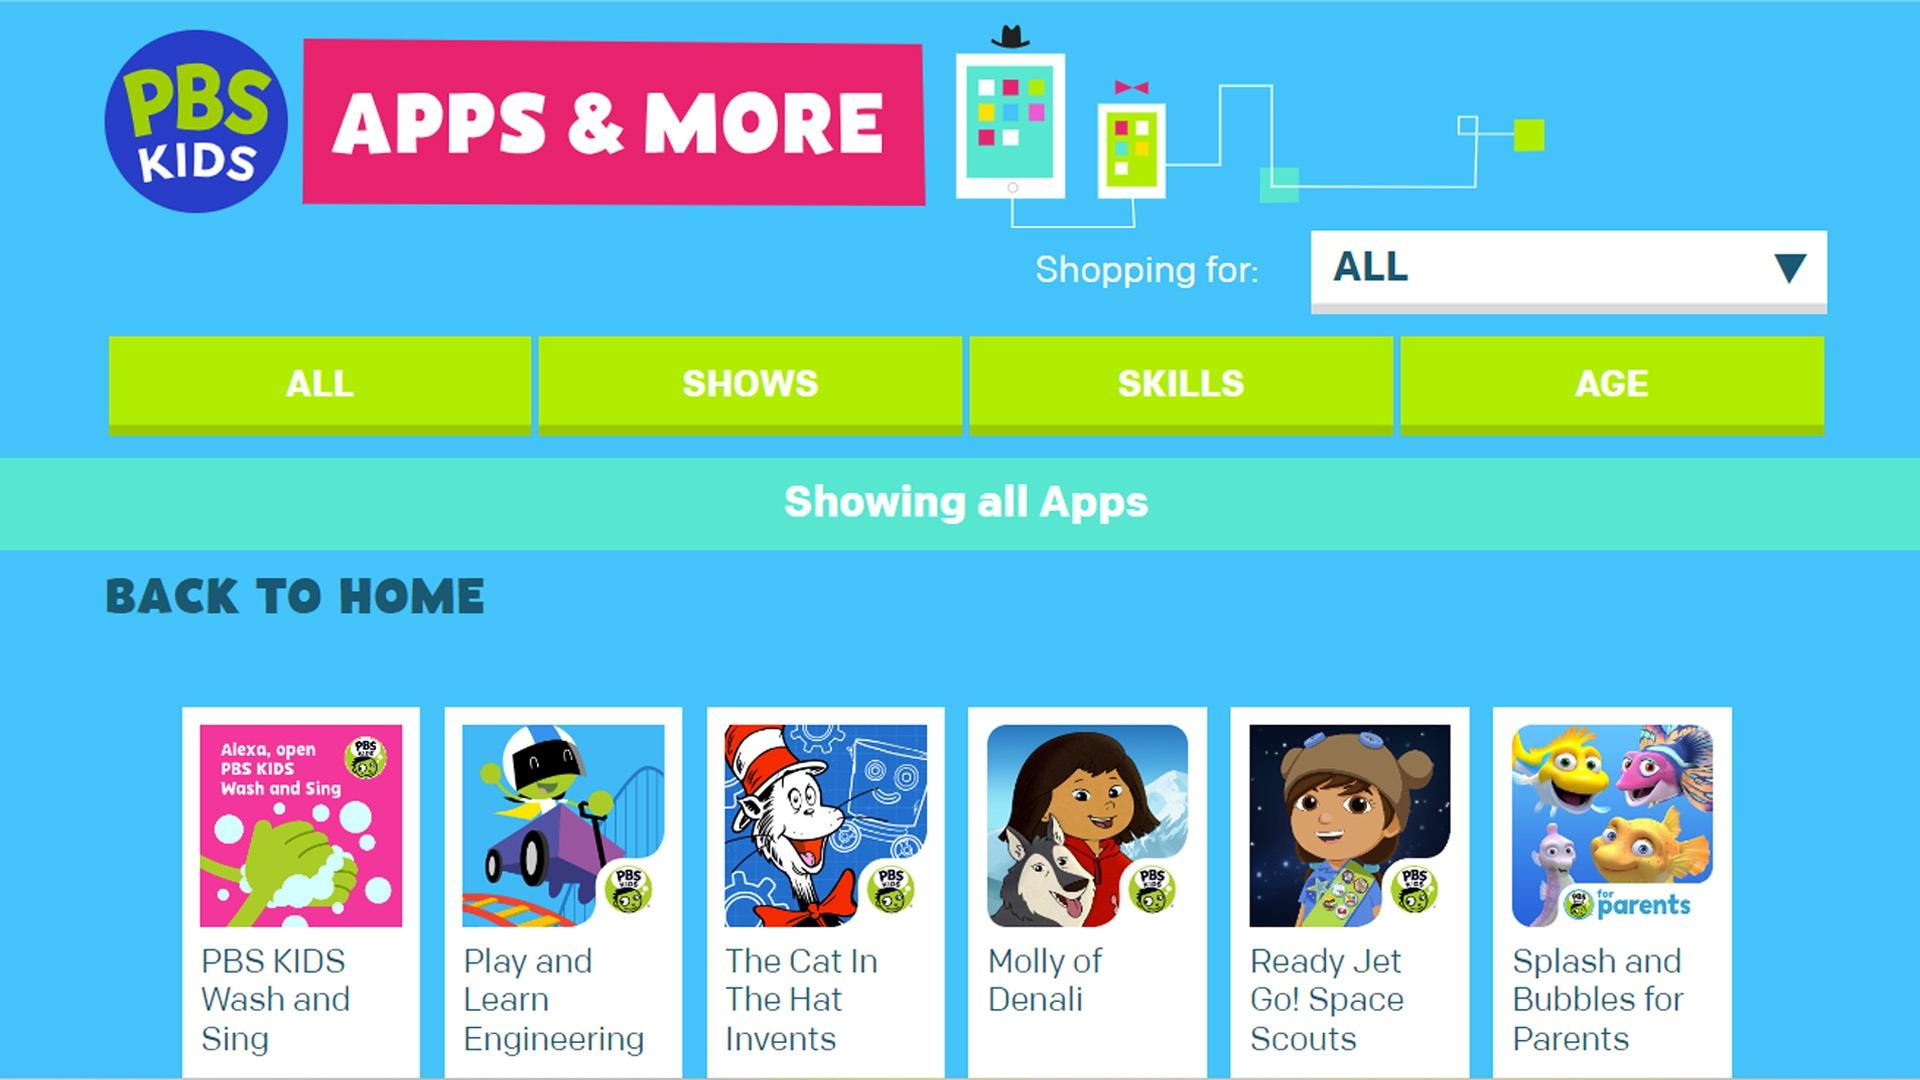 PBS KIDS apps